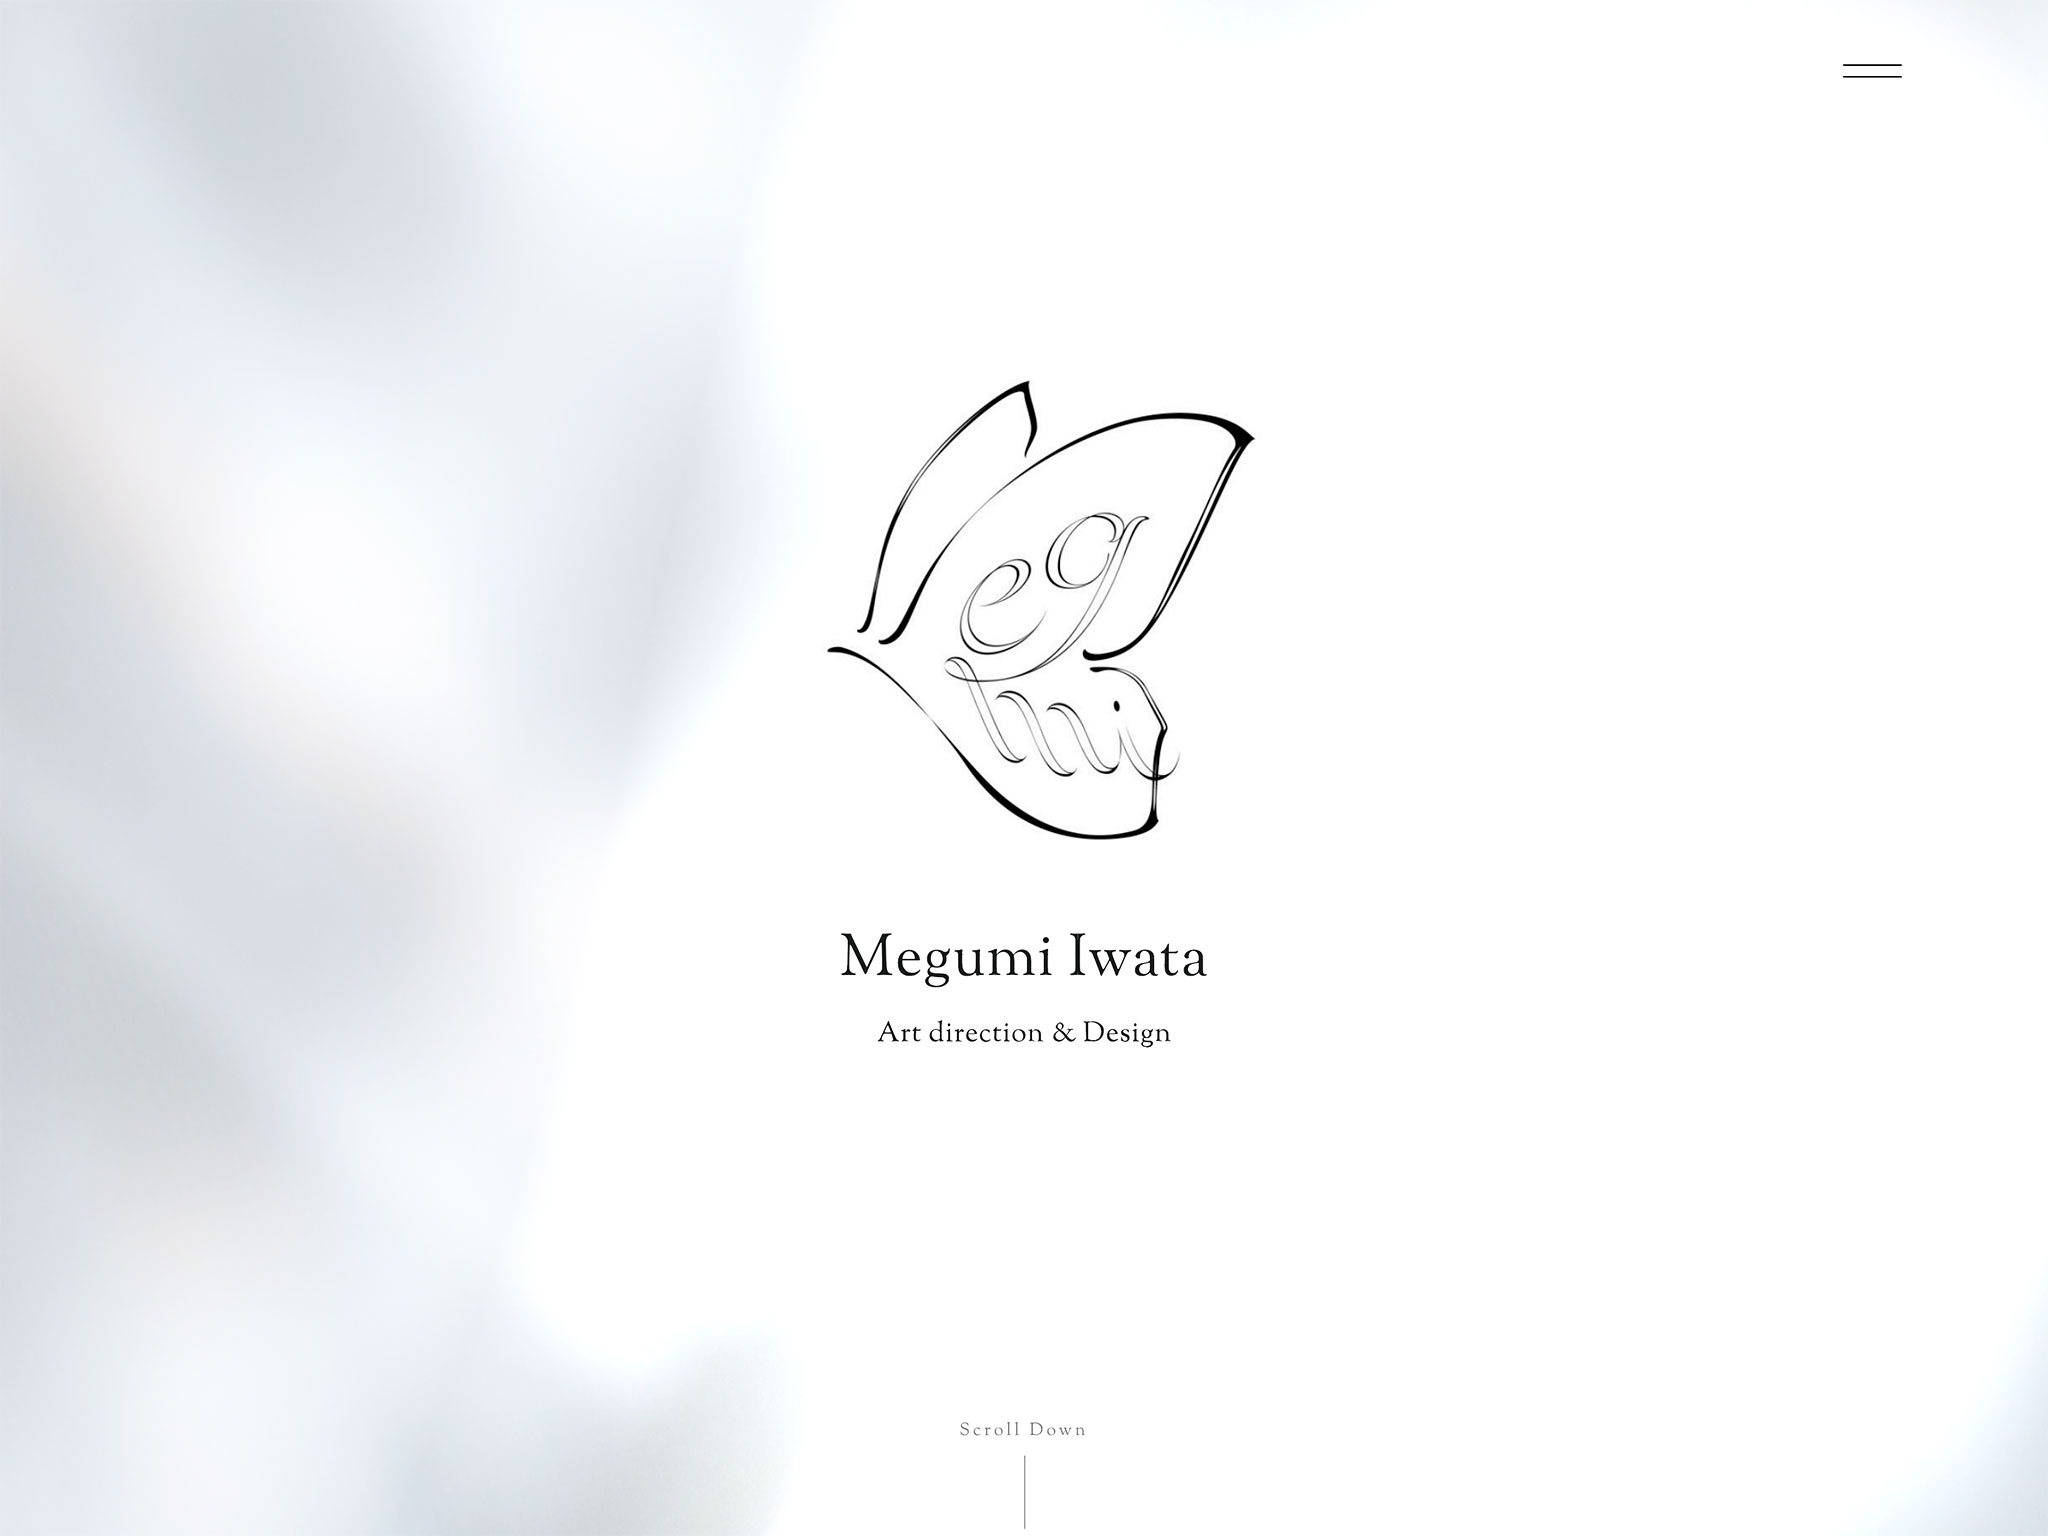 Megumi Iwata | 東京のブランディングデザイン事務所